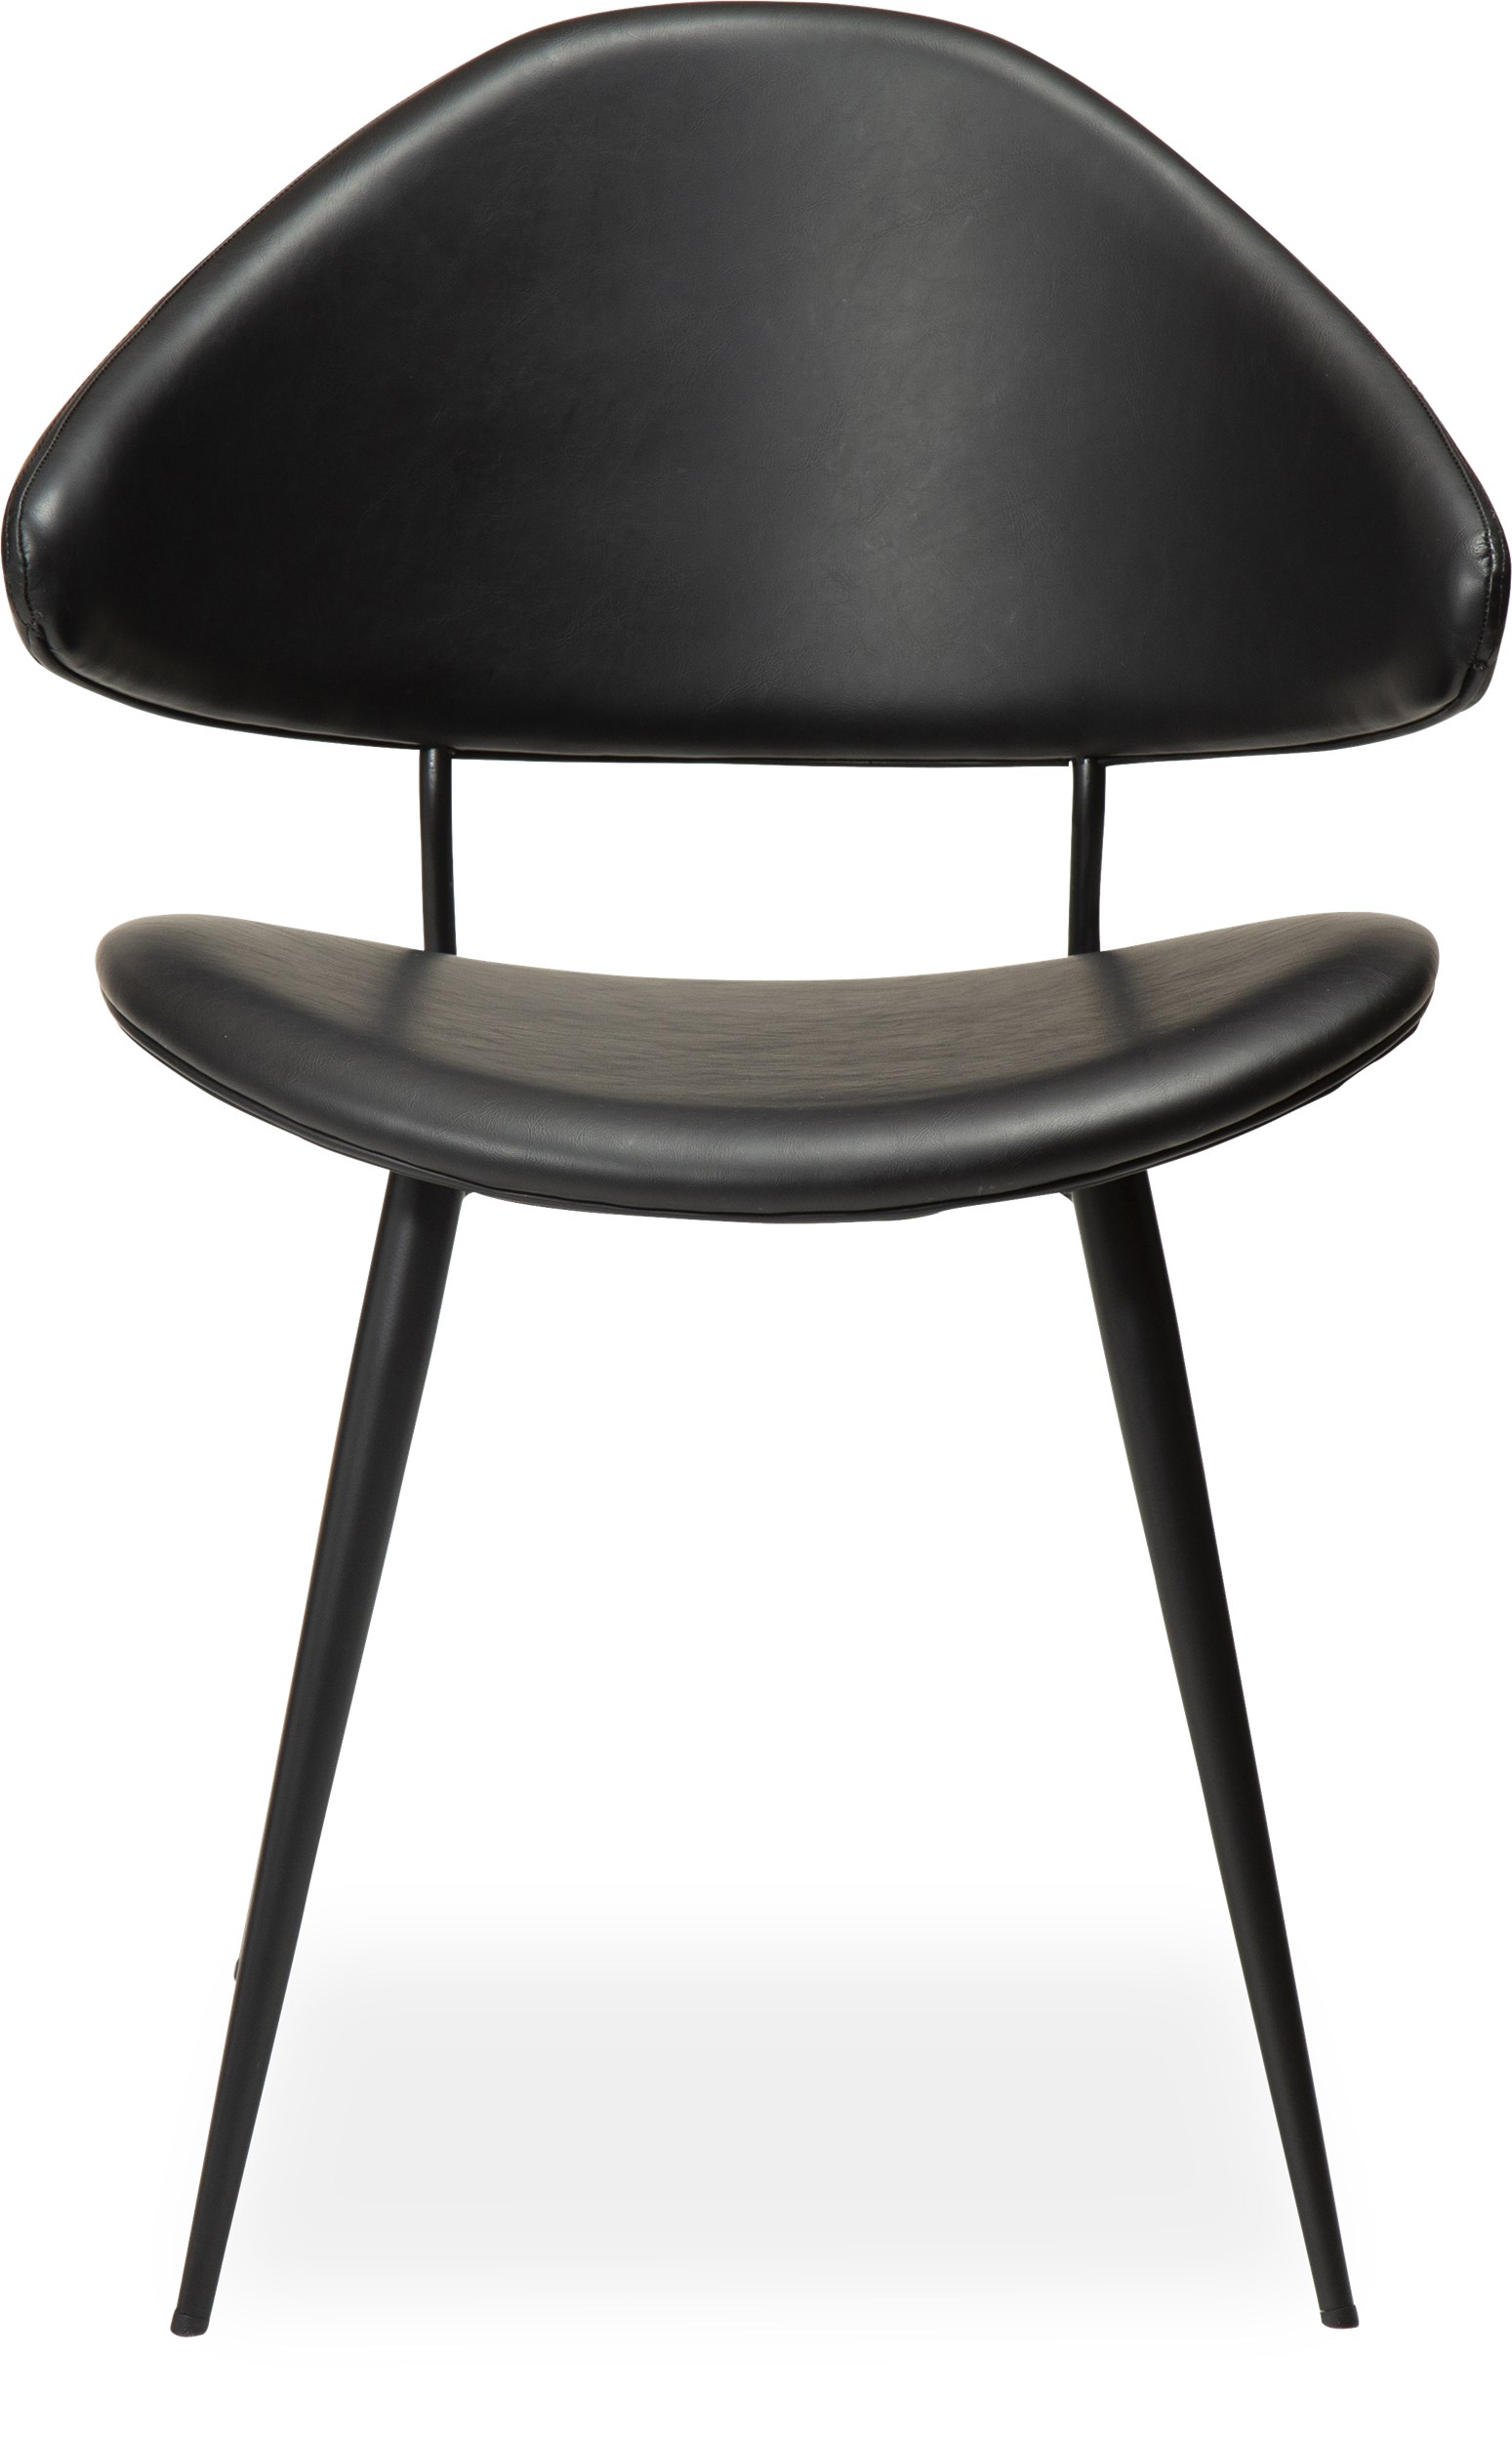 Napoleon matstol - sits i svart vintage konstläder och runda ben i svartlackerad metall